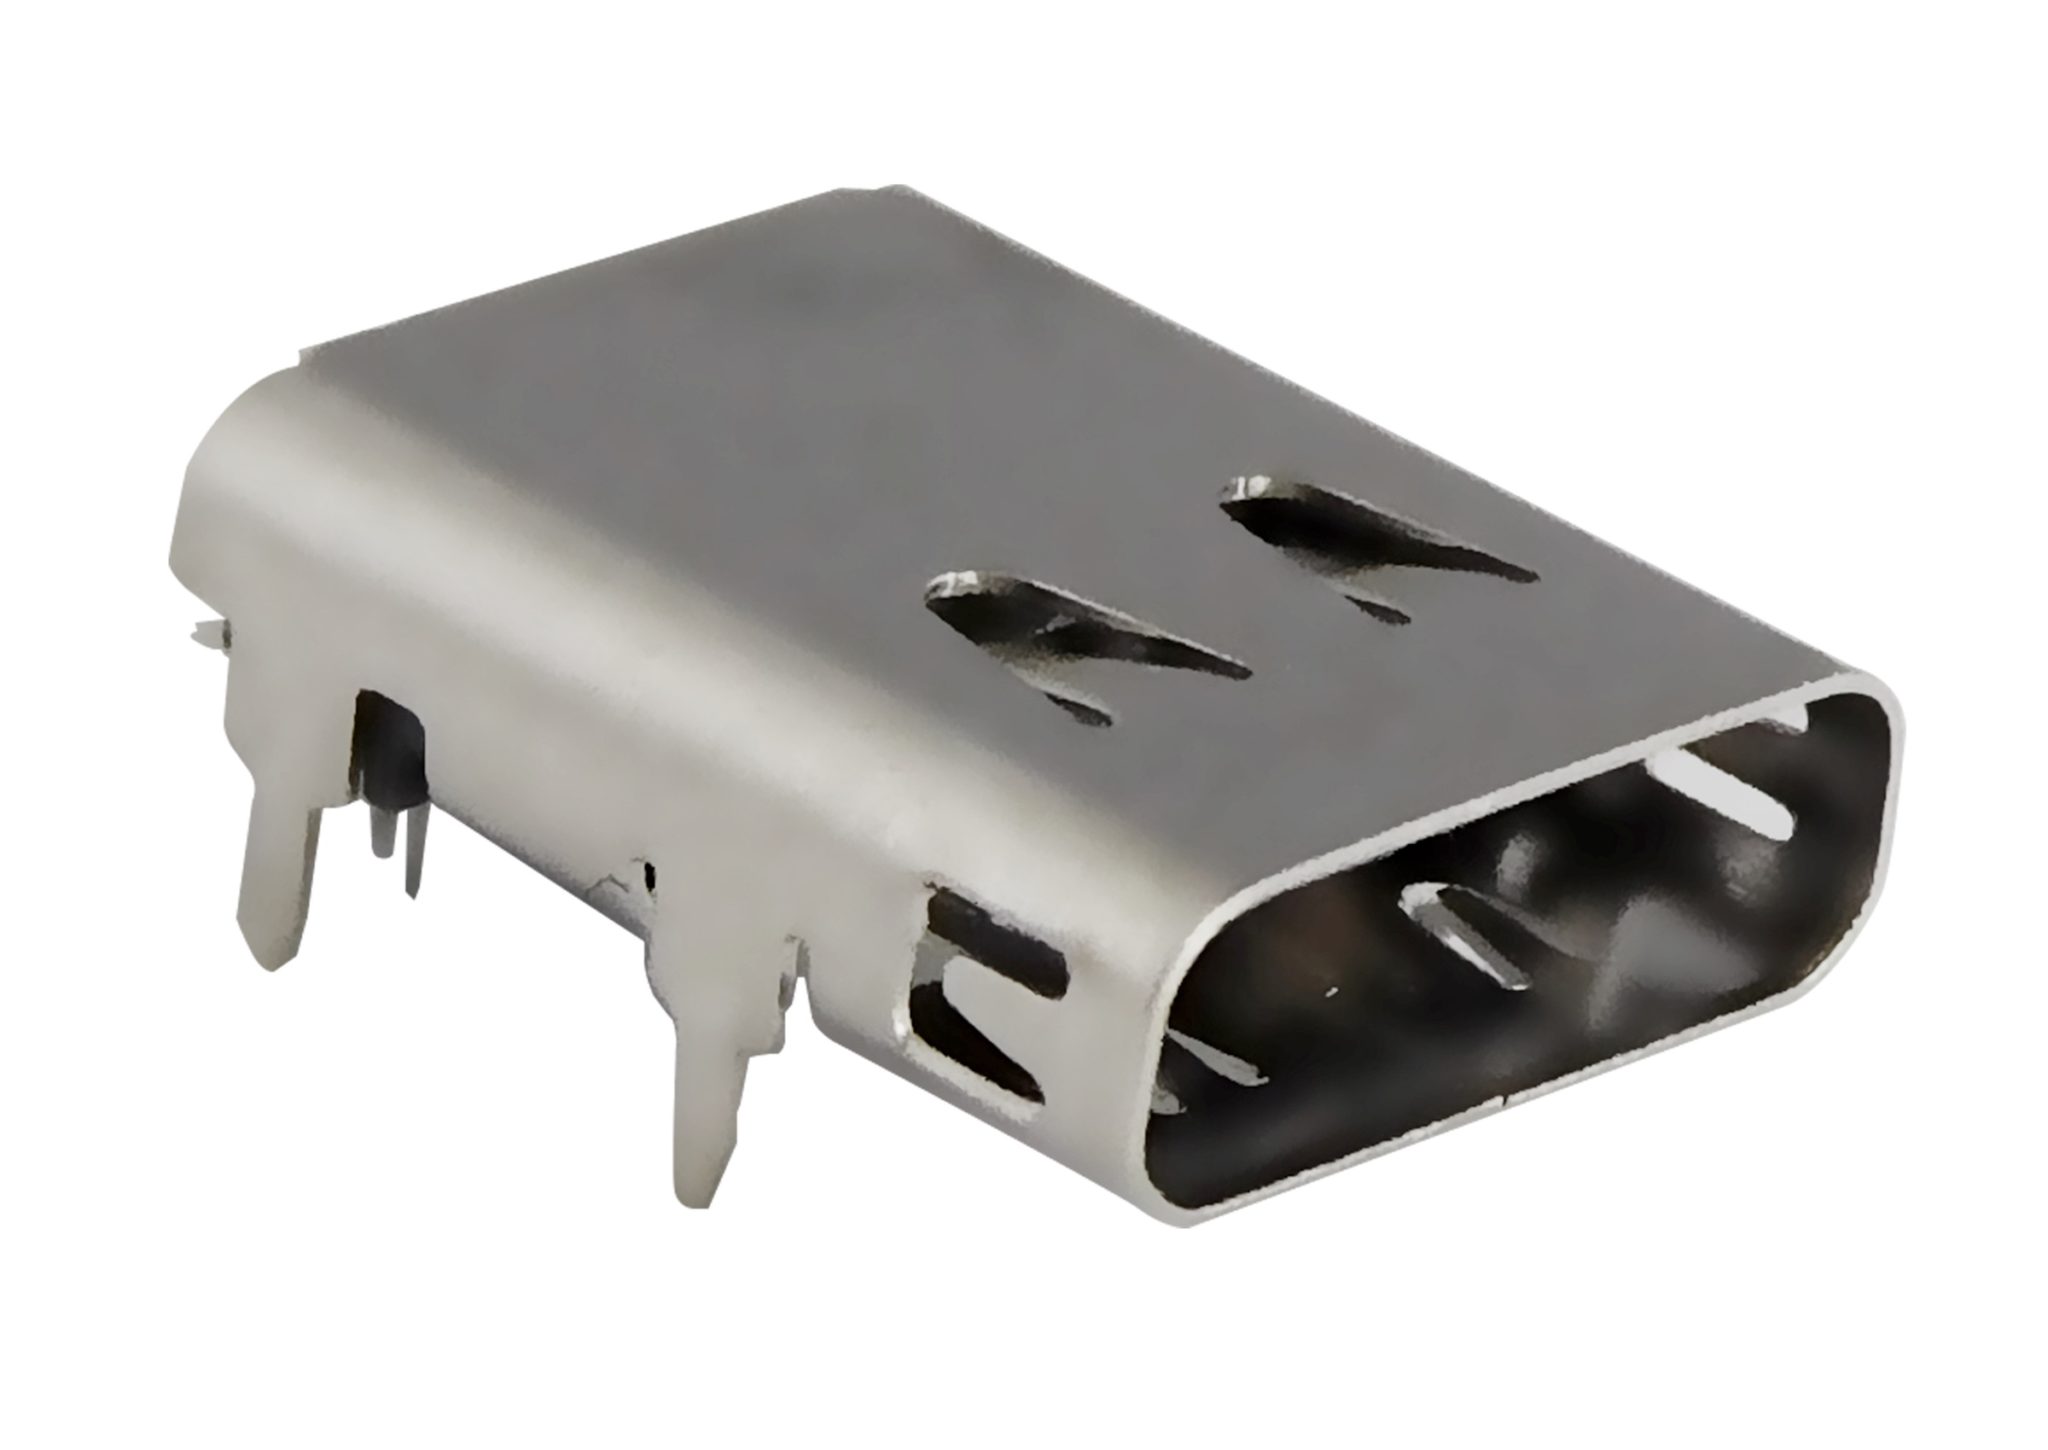 Stewart Connectors robust USB connectors